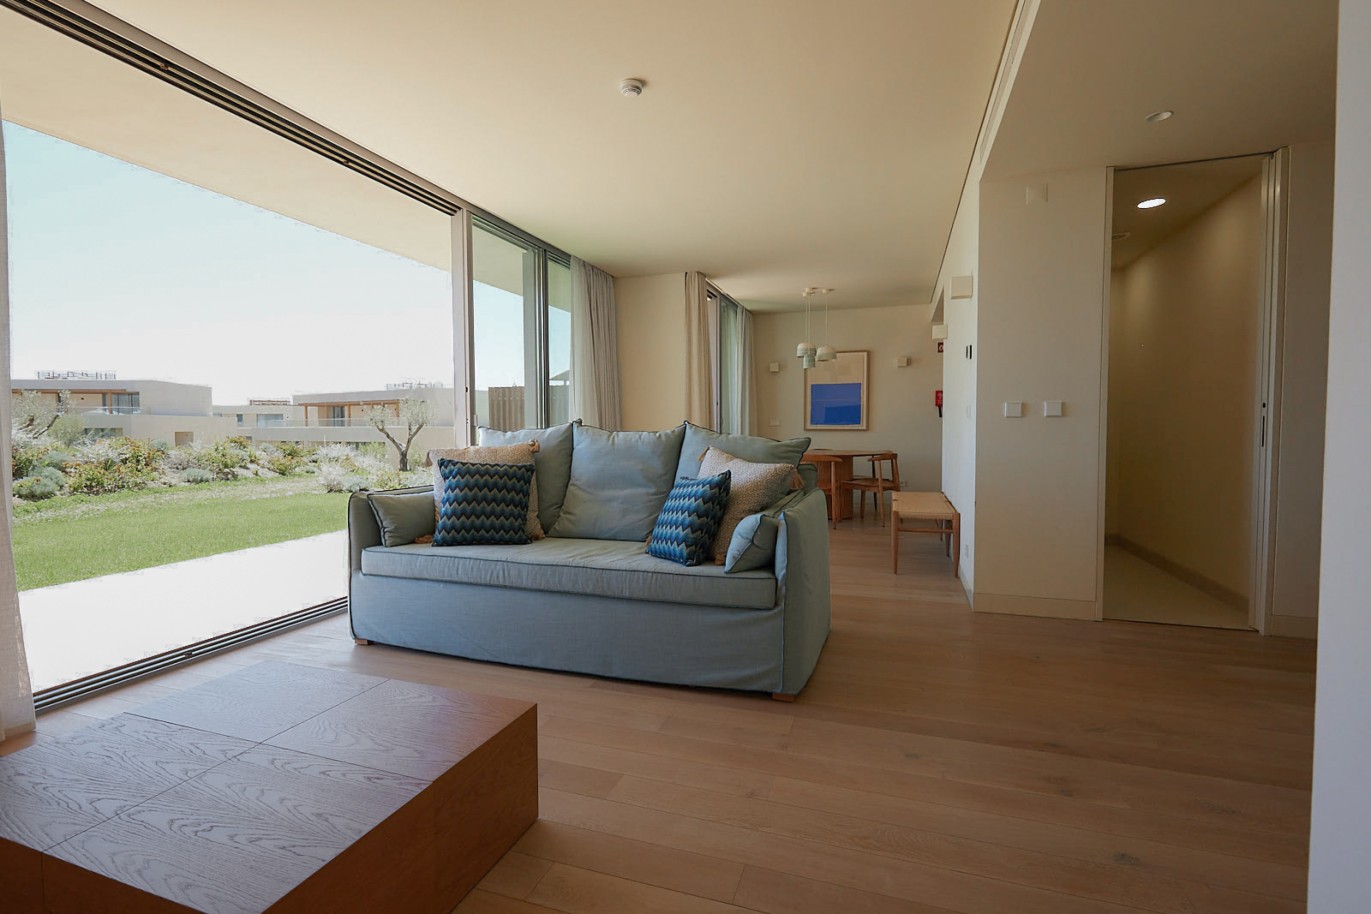 Piso de 2 dormitorios en complejo, en venta en Porches, Algarve_228701